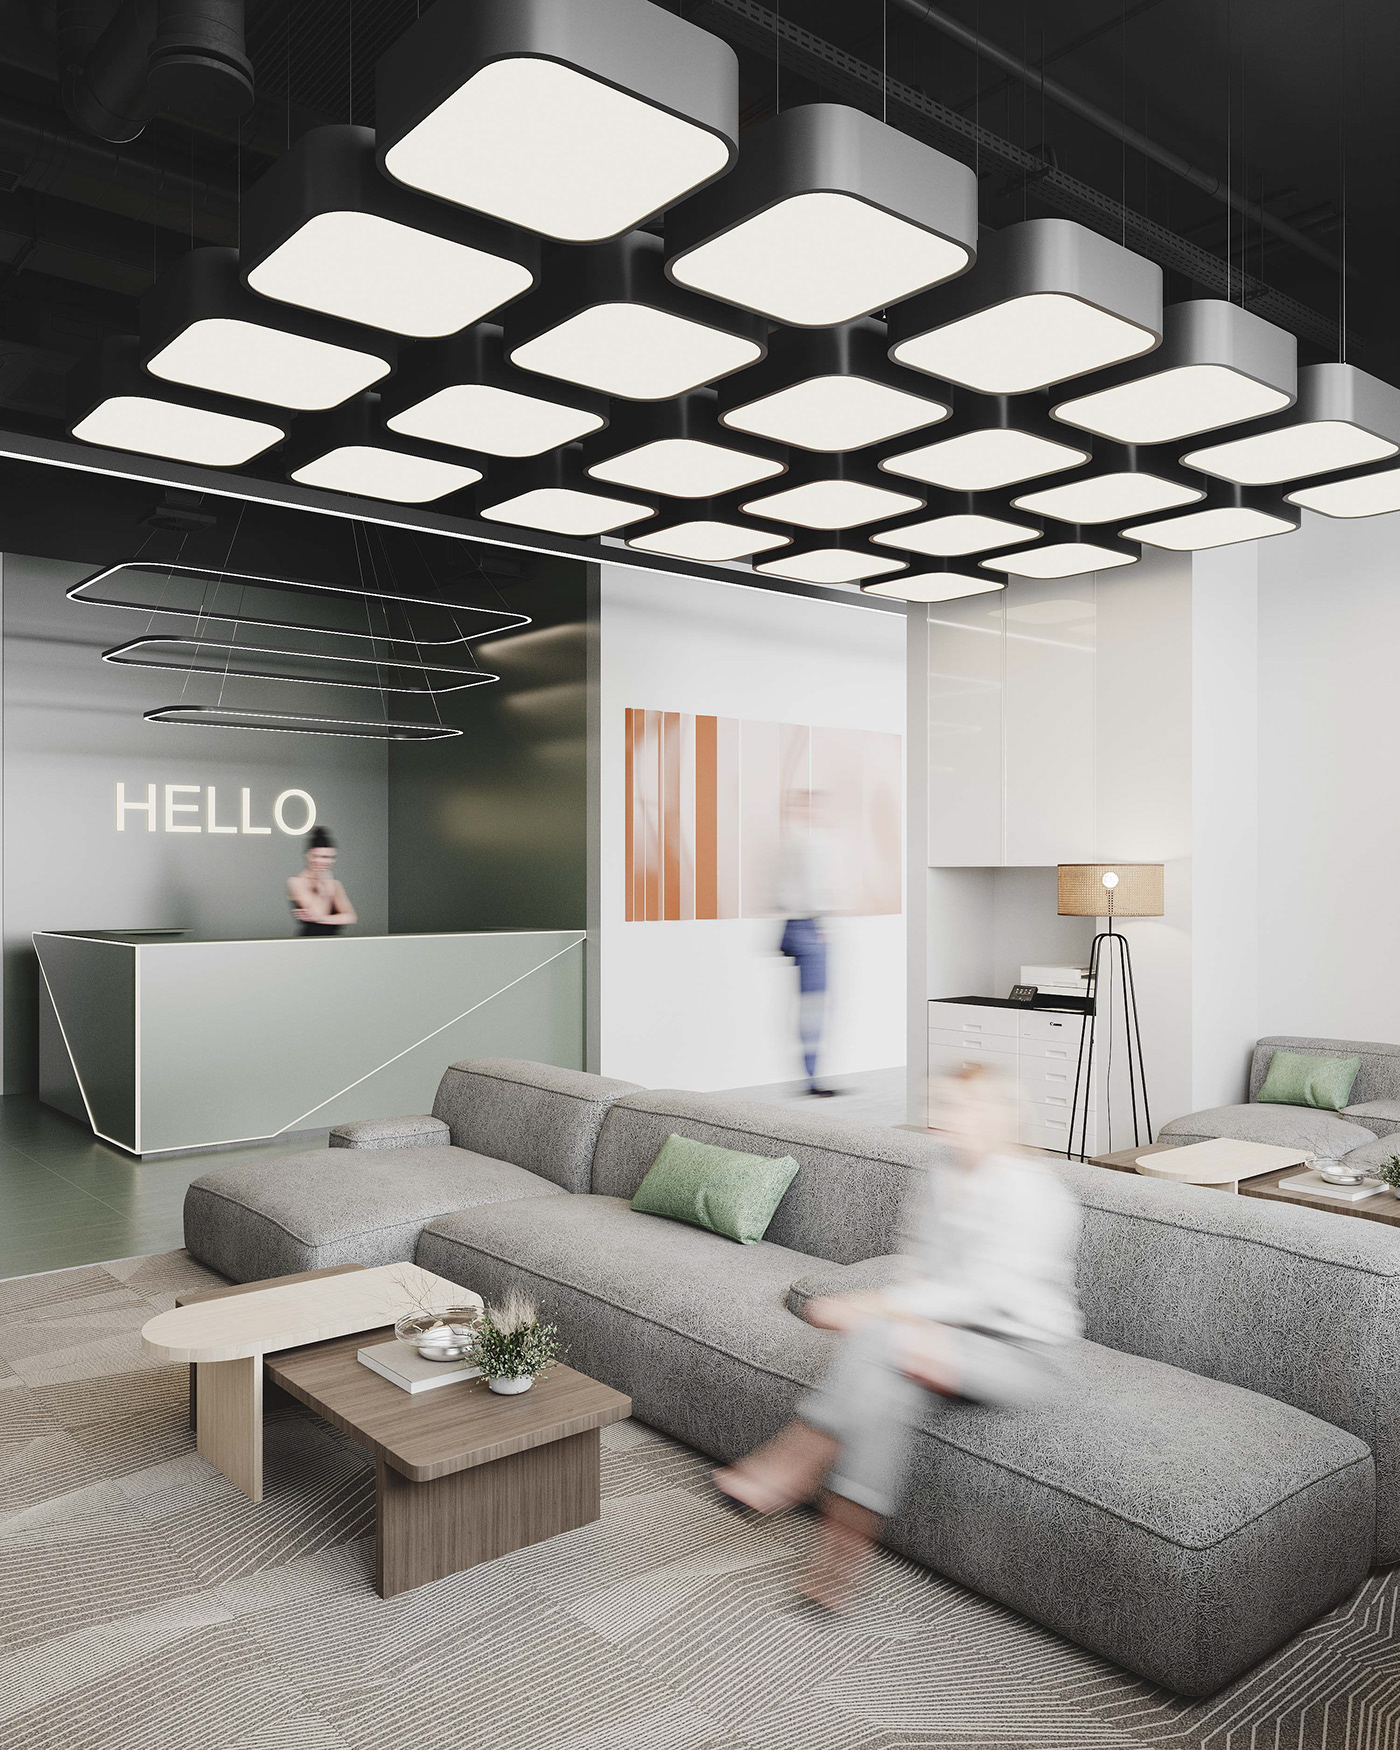 3ds max architecture artwork corona render  interior design  modern Office photoshop Render visualization